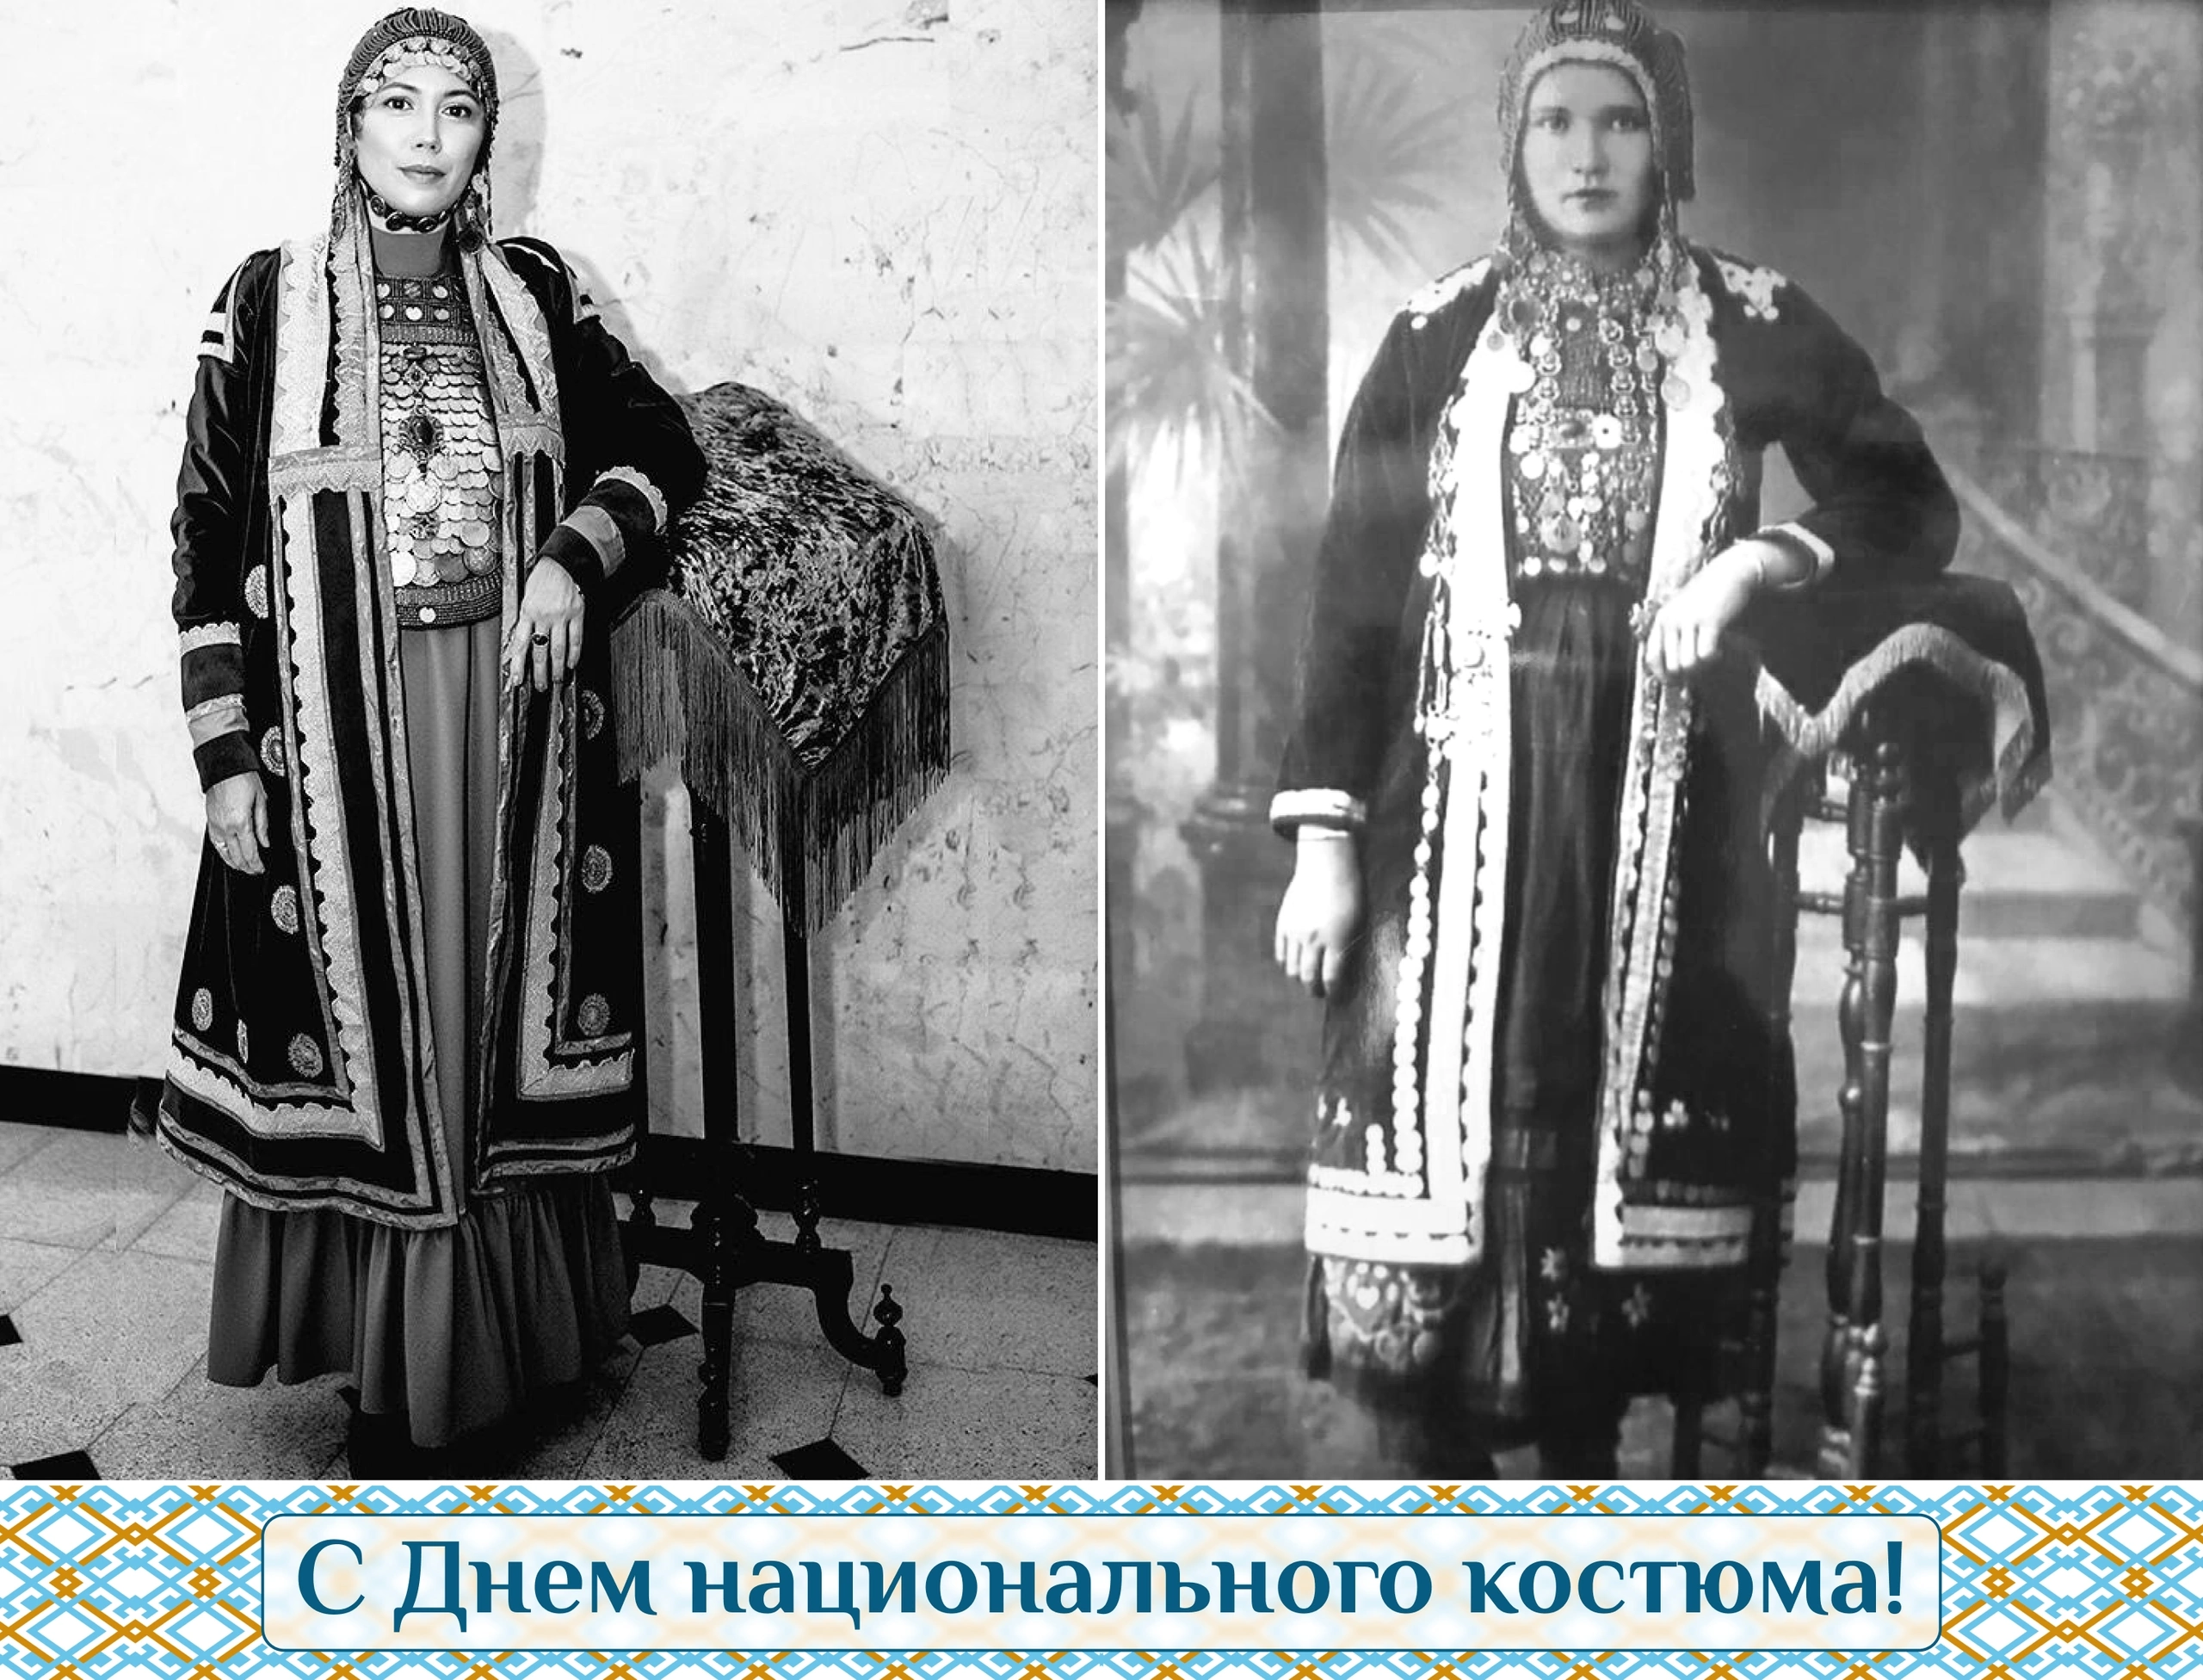 Даем старт конкурсу старинных фотографий из семейного архива в национальных костюмах "Истоки"!